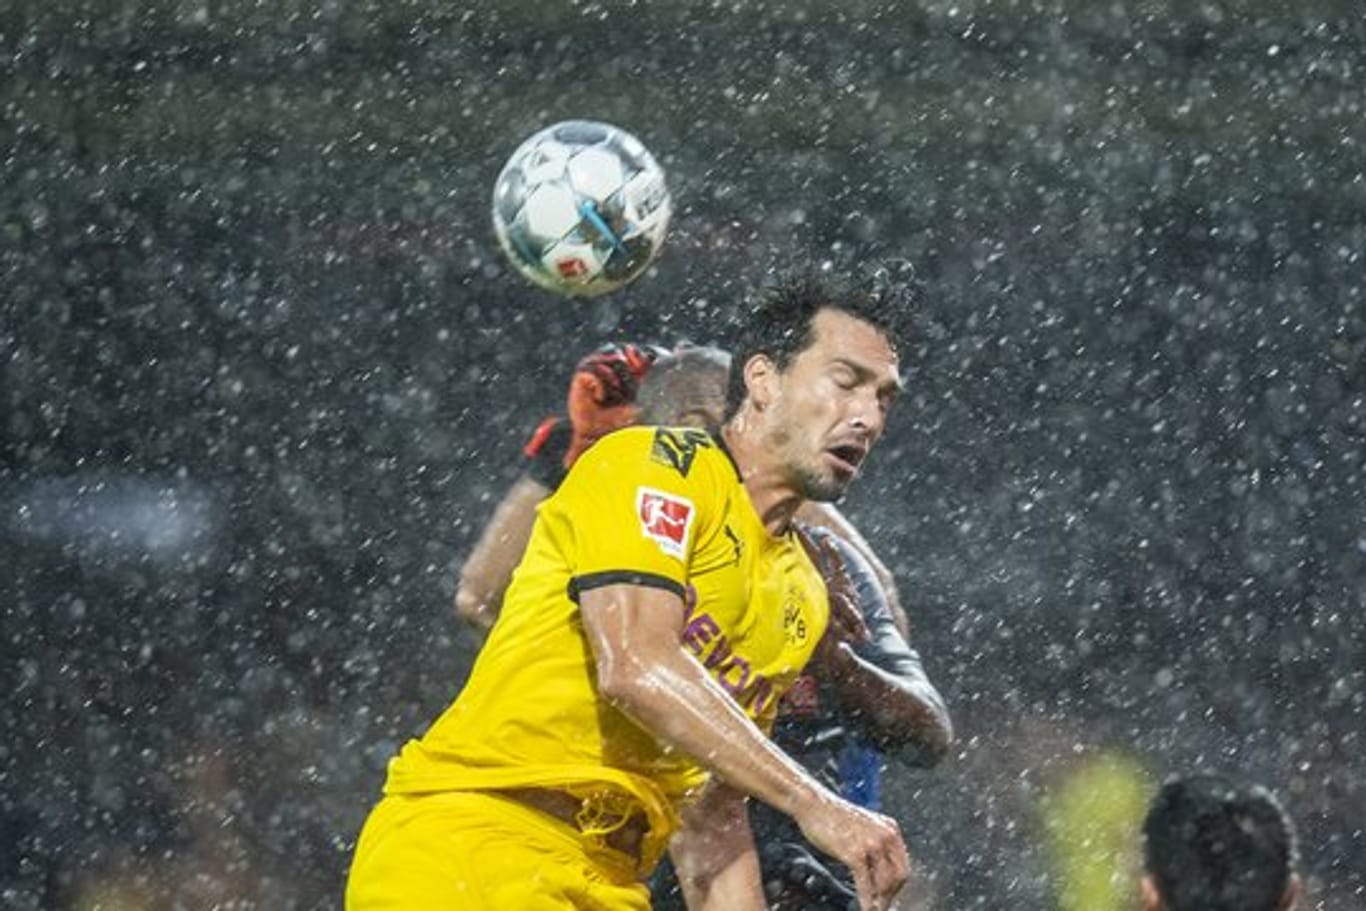 Wegen sintflutartiger Regenfälle wurde das Testspiel zwischen Borussia Dortmund und Udinese Calcio abgebrochen.